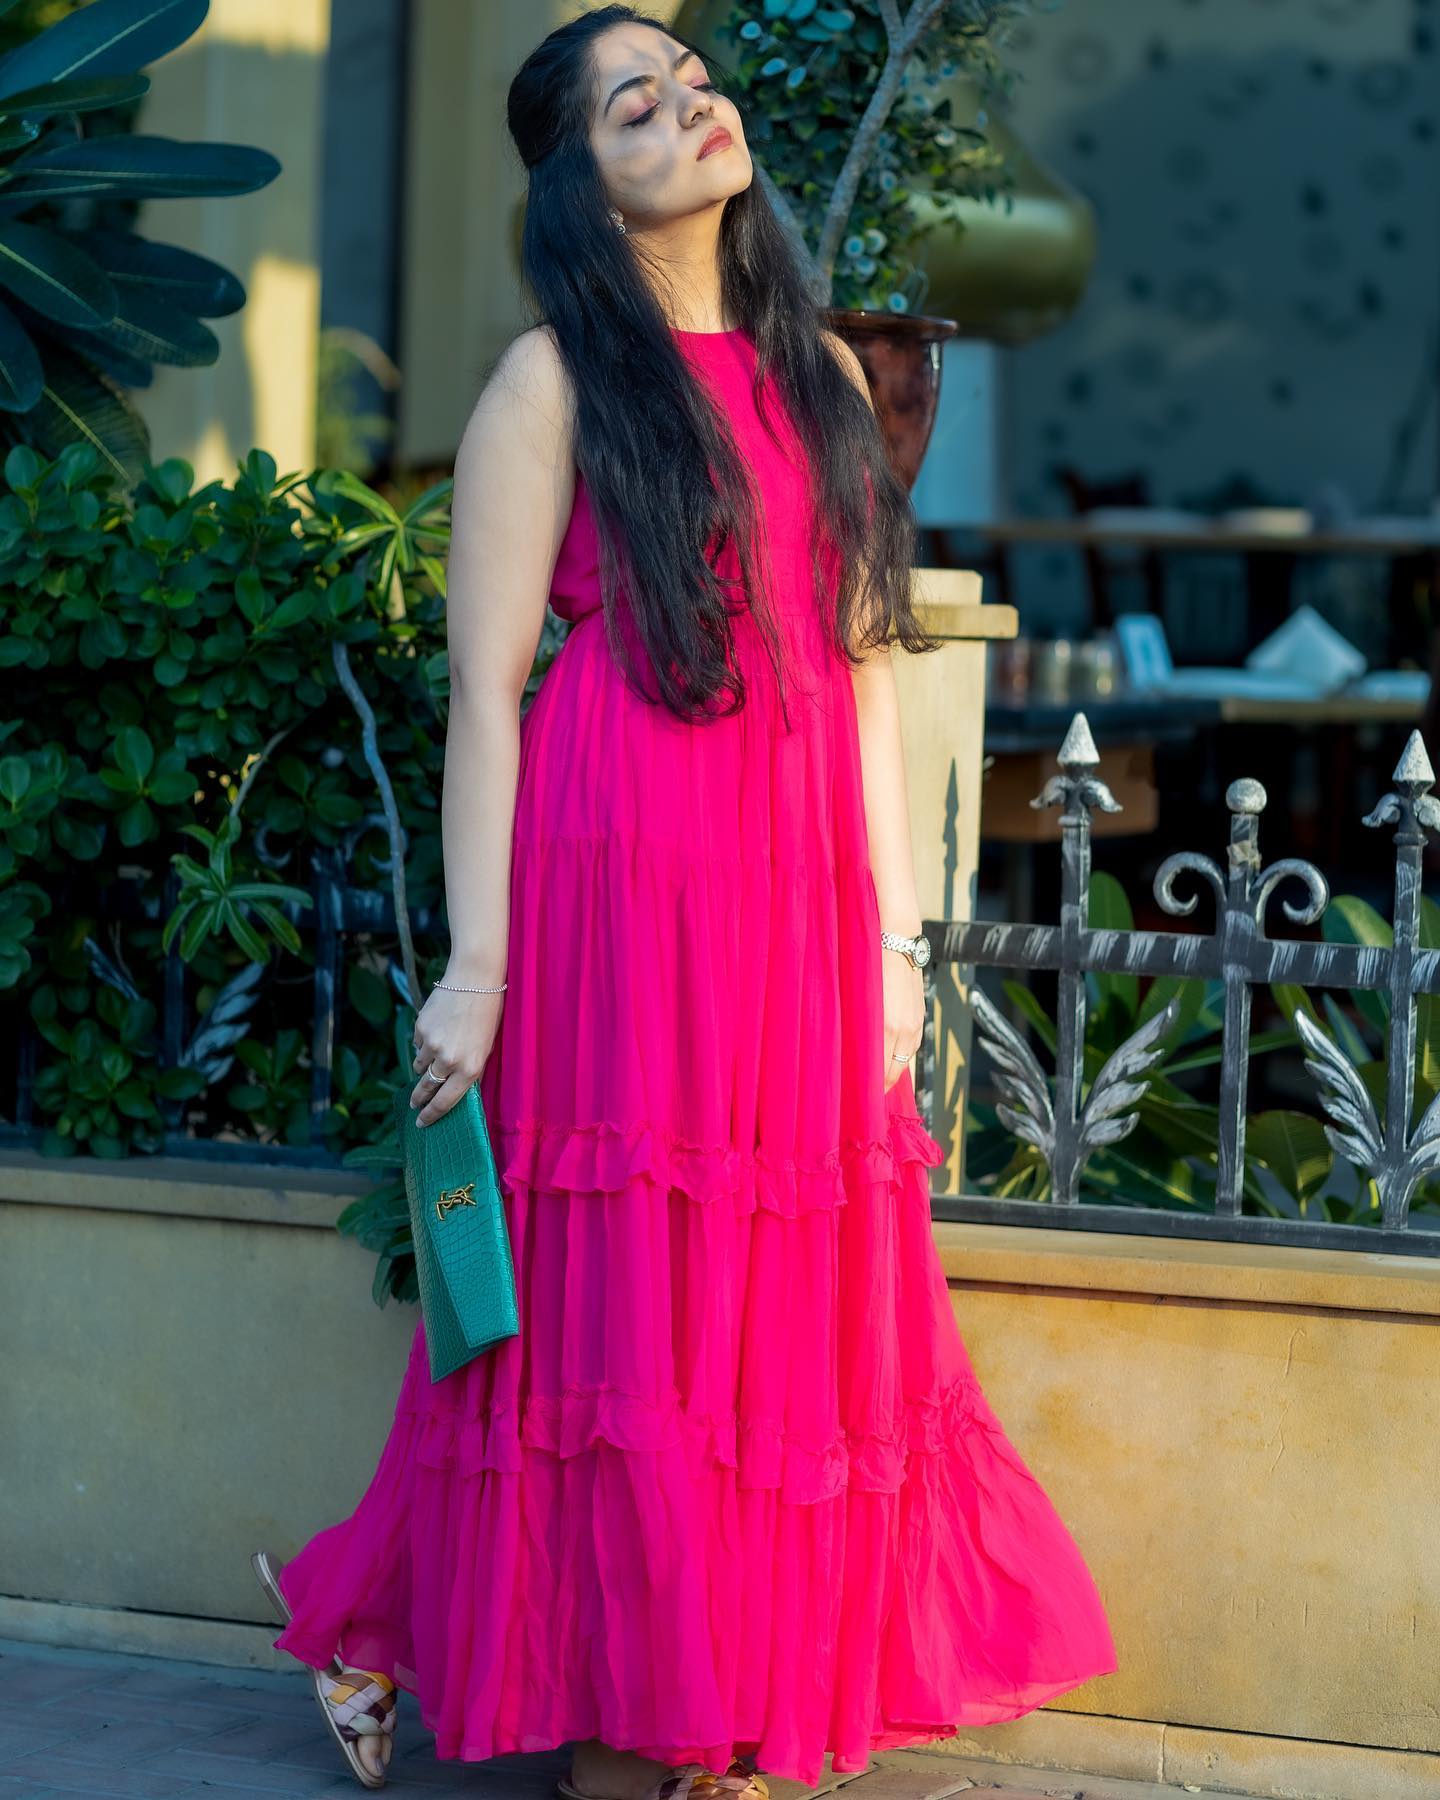 ahana-krishnakumar-in-pink-long-dress-photos-001